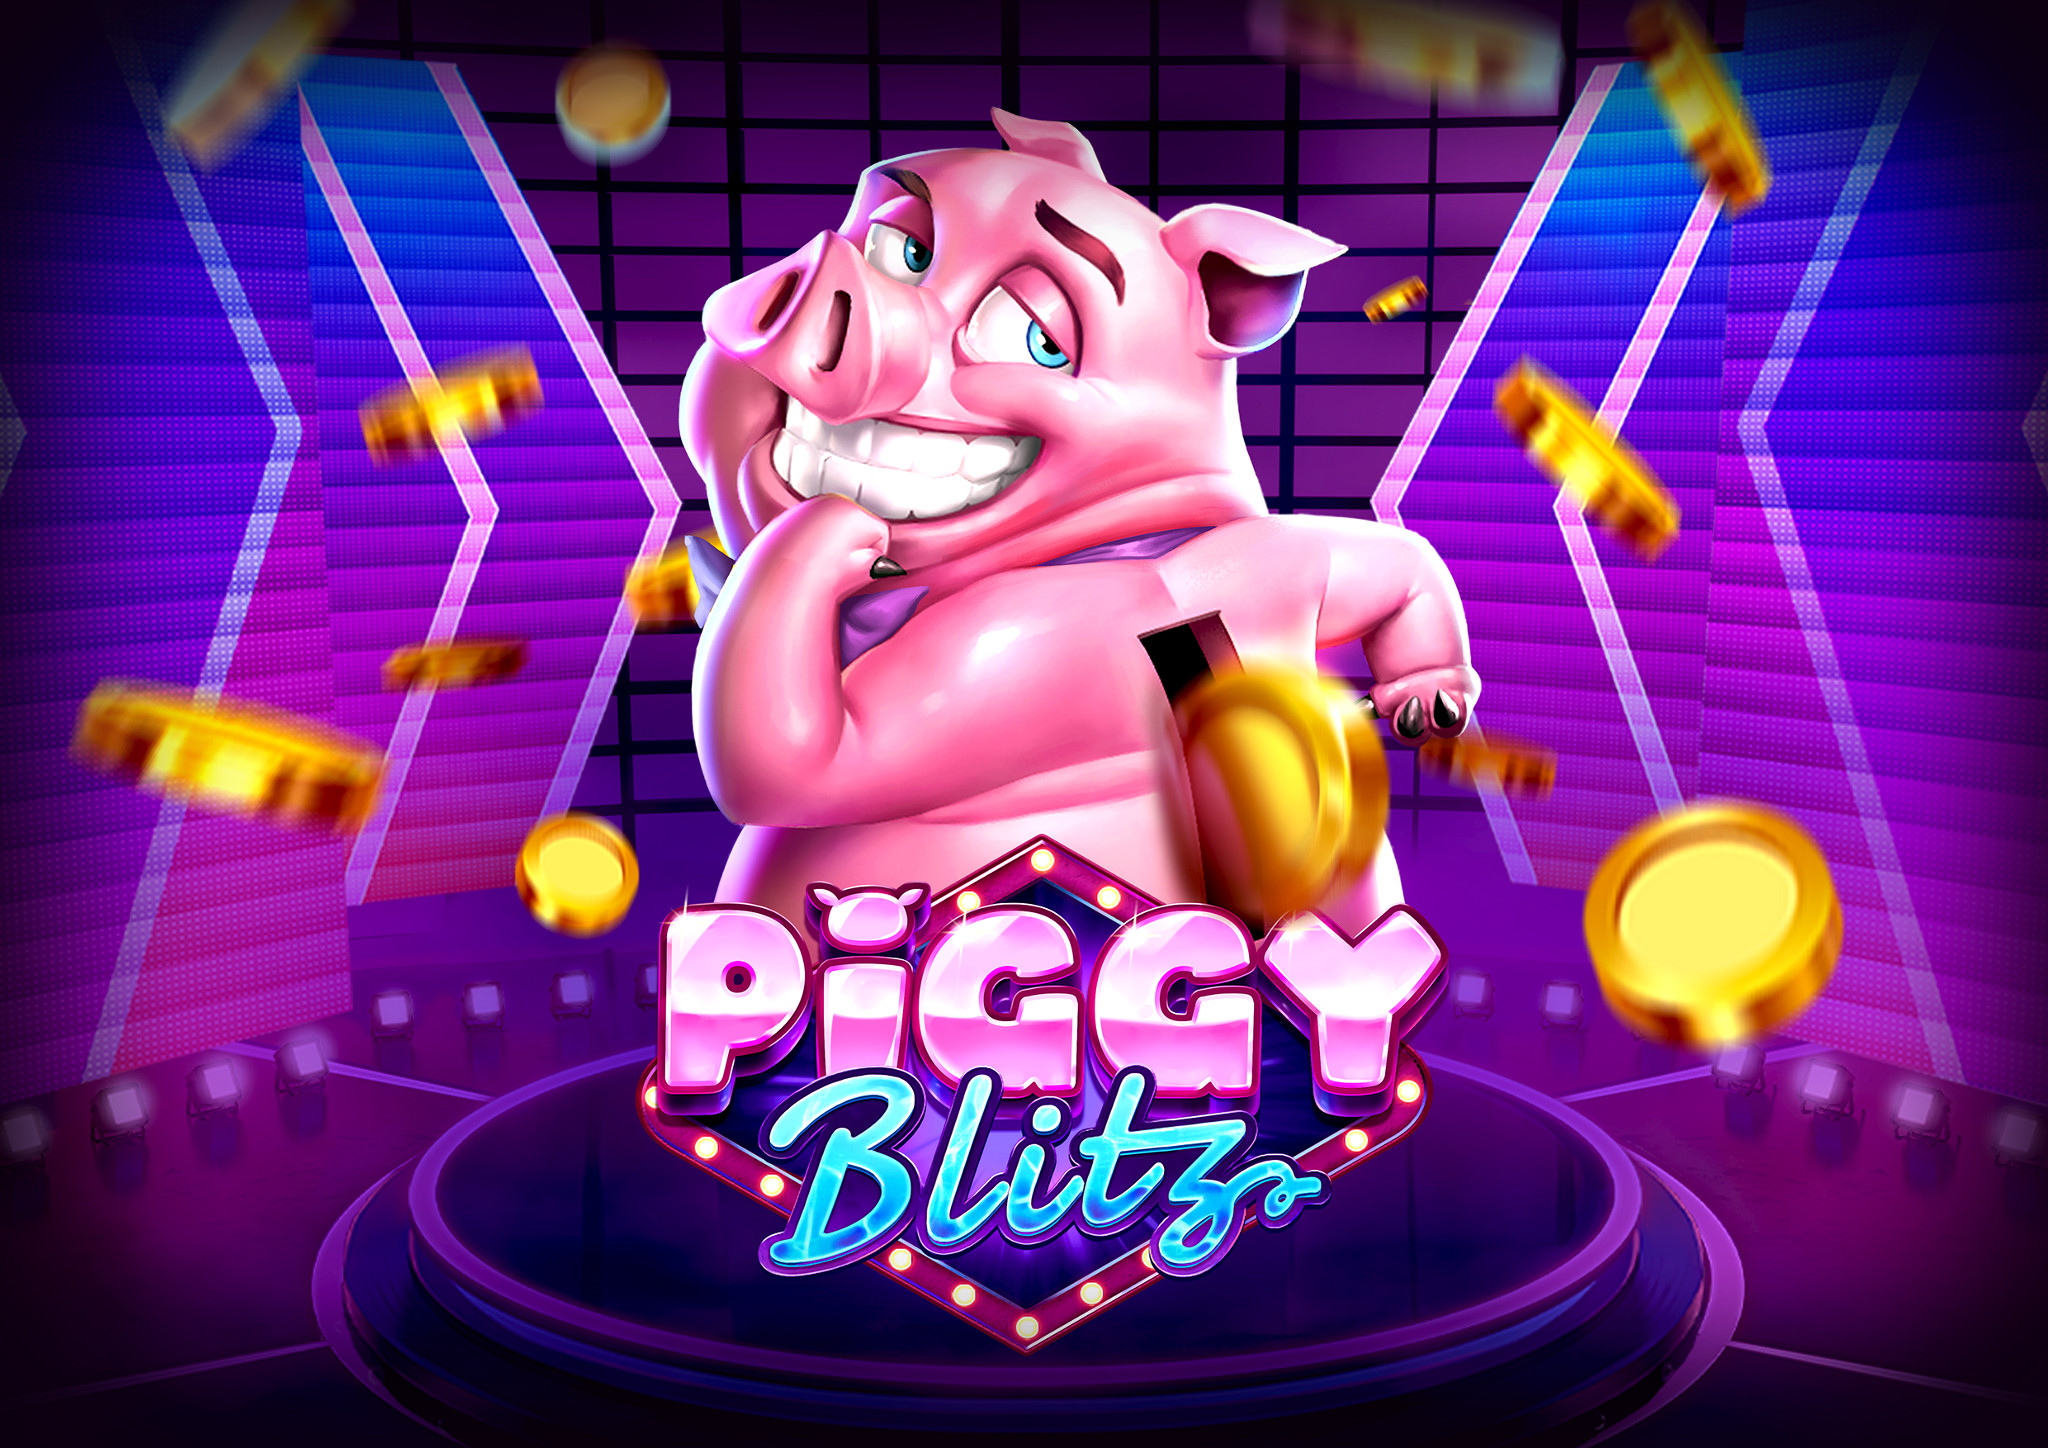 Play'n Go Piggy